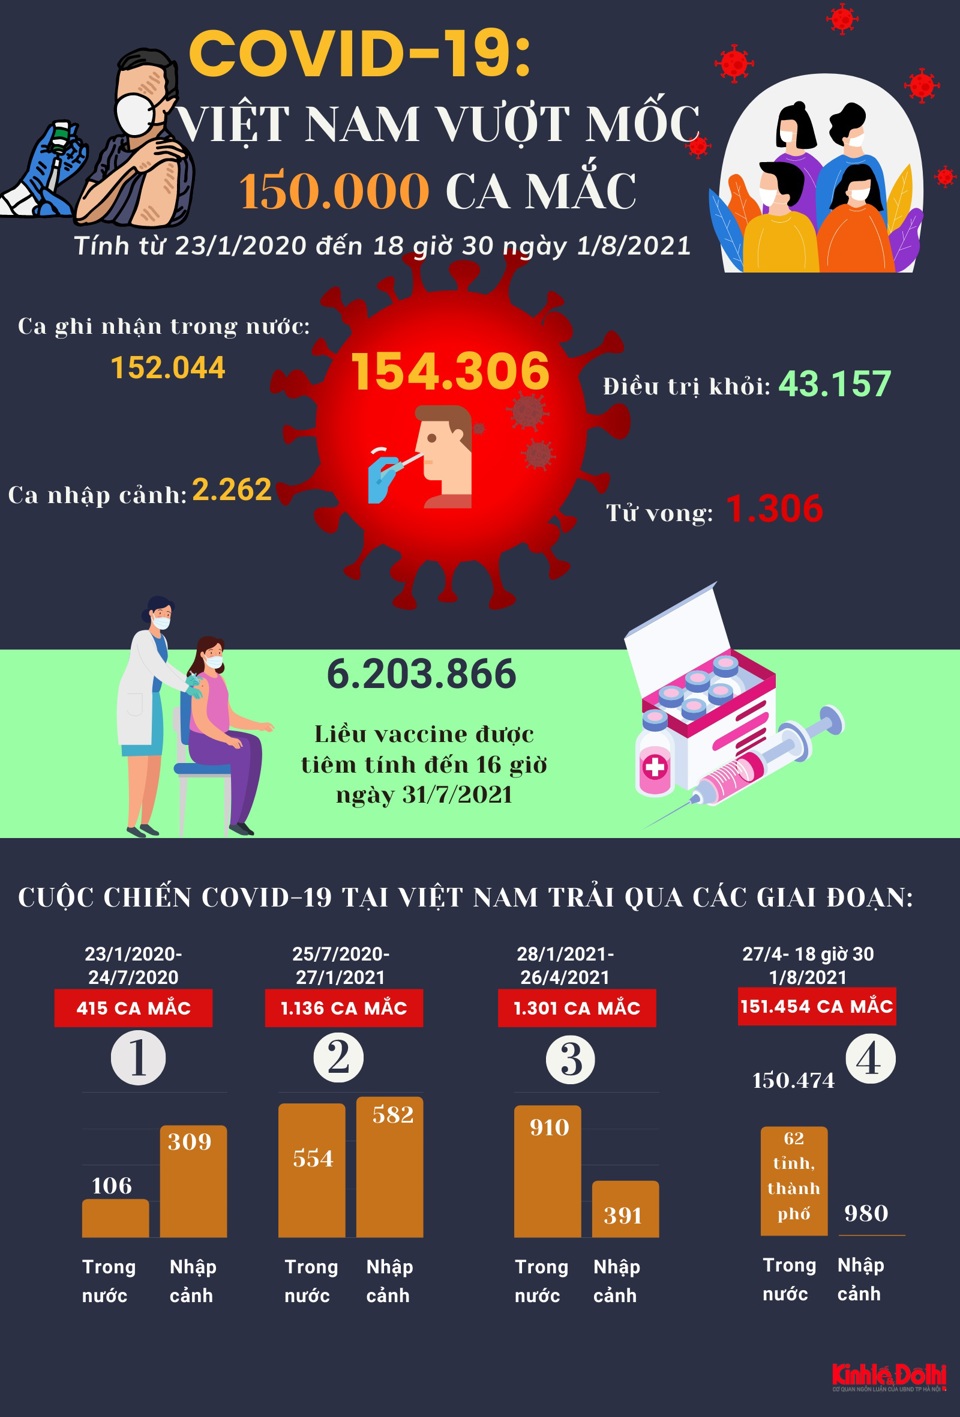 [Infographic] Việt Nam vượt mốc 150.000 ca mắc Covid-19 - Ảnh 1